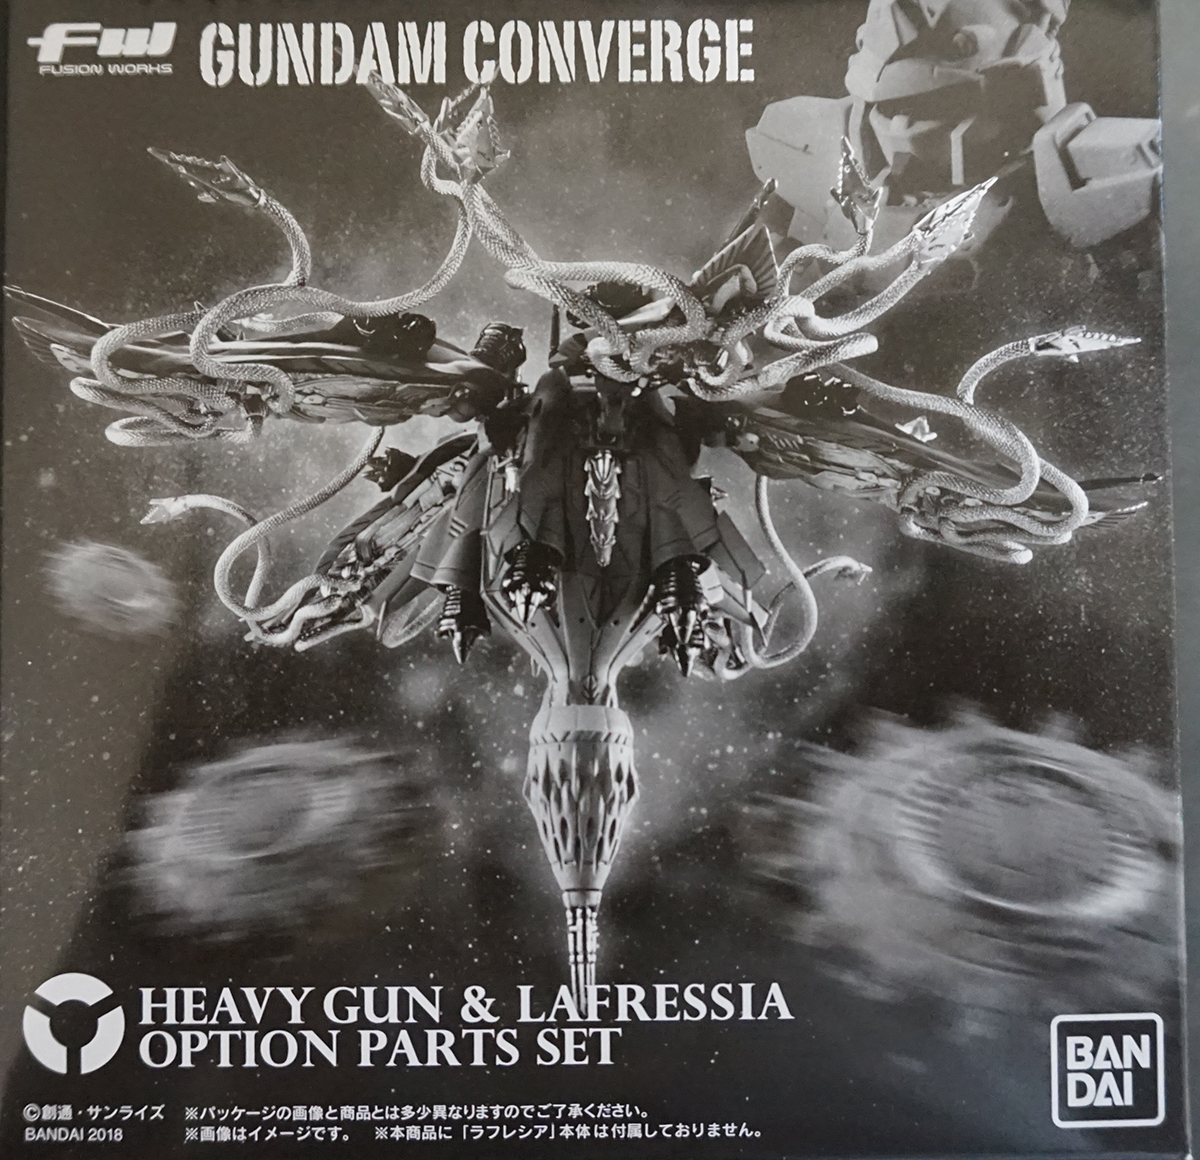 Fw Gundam Converge ヘビーガン ラフレシアオプションパーツセット レビュー